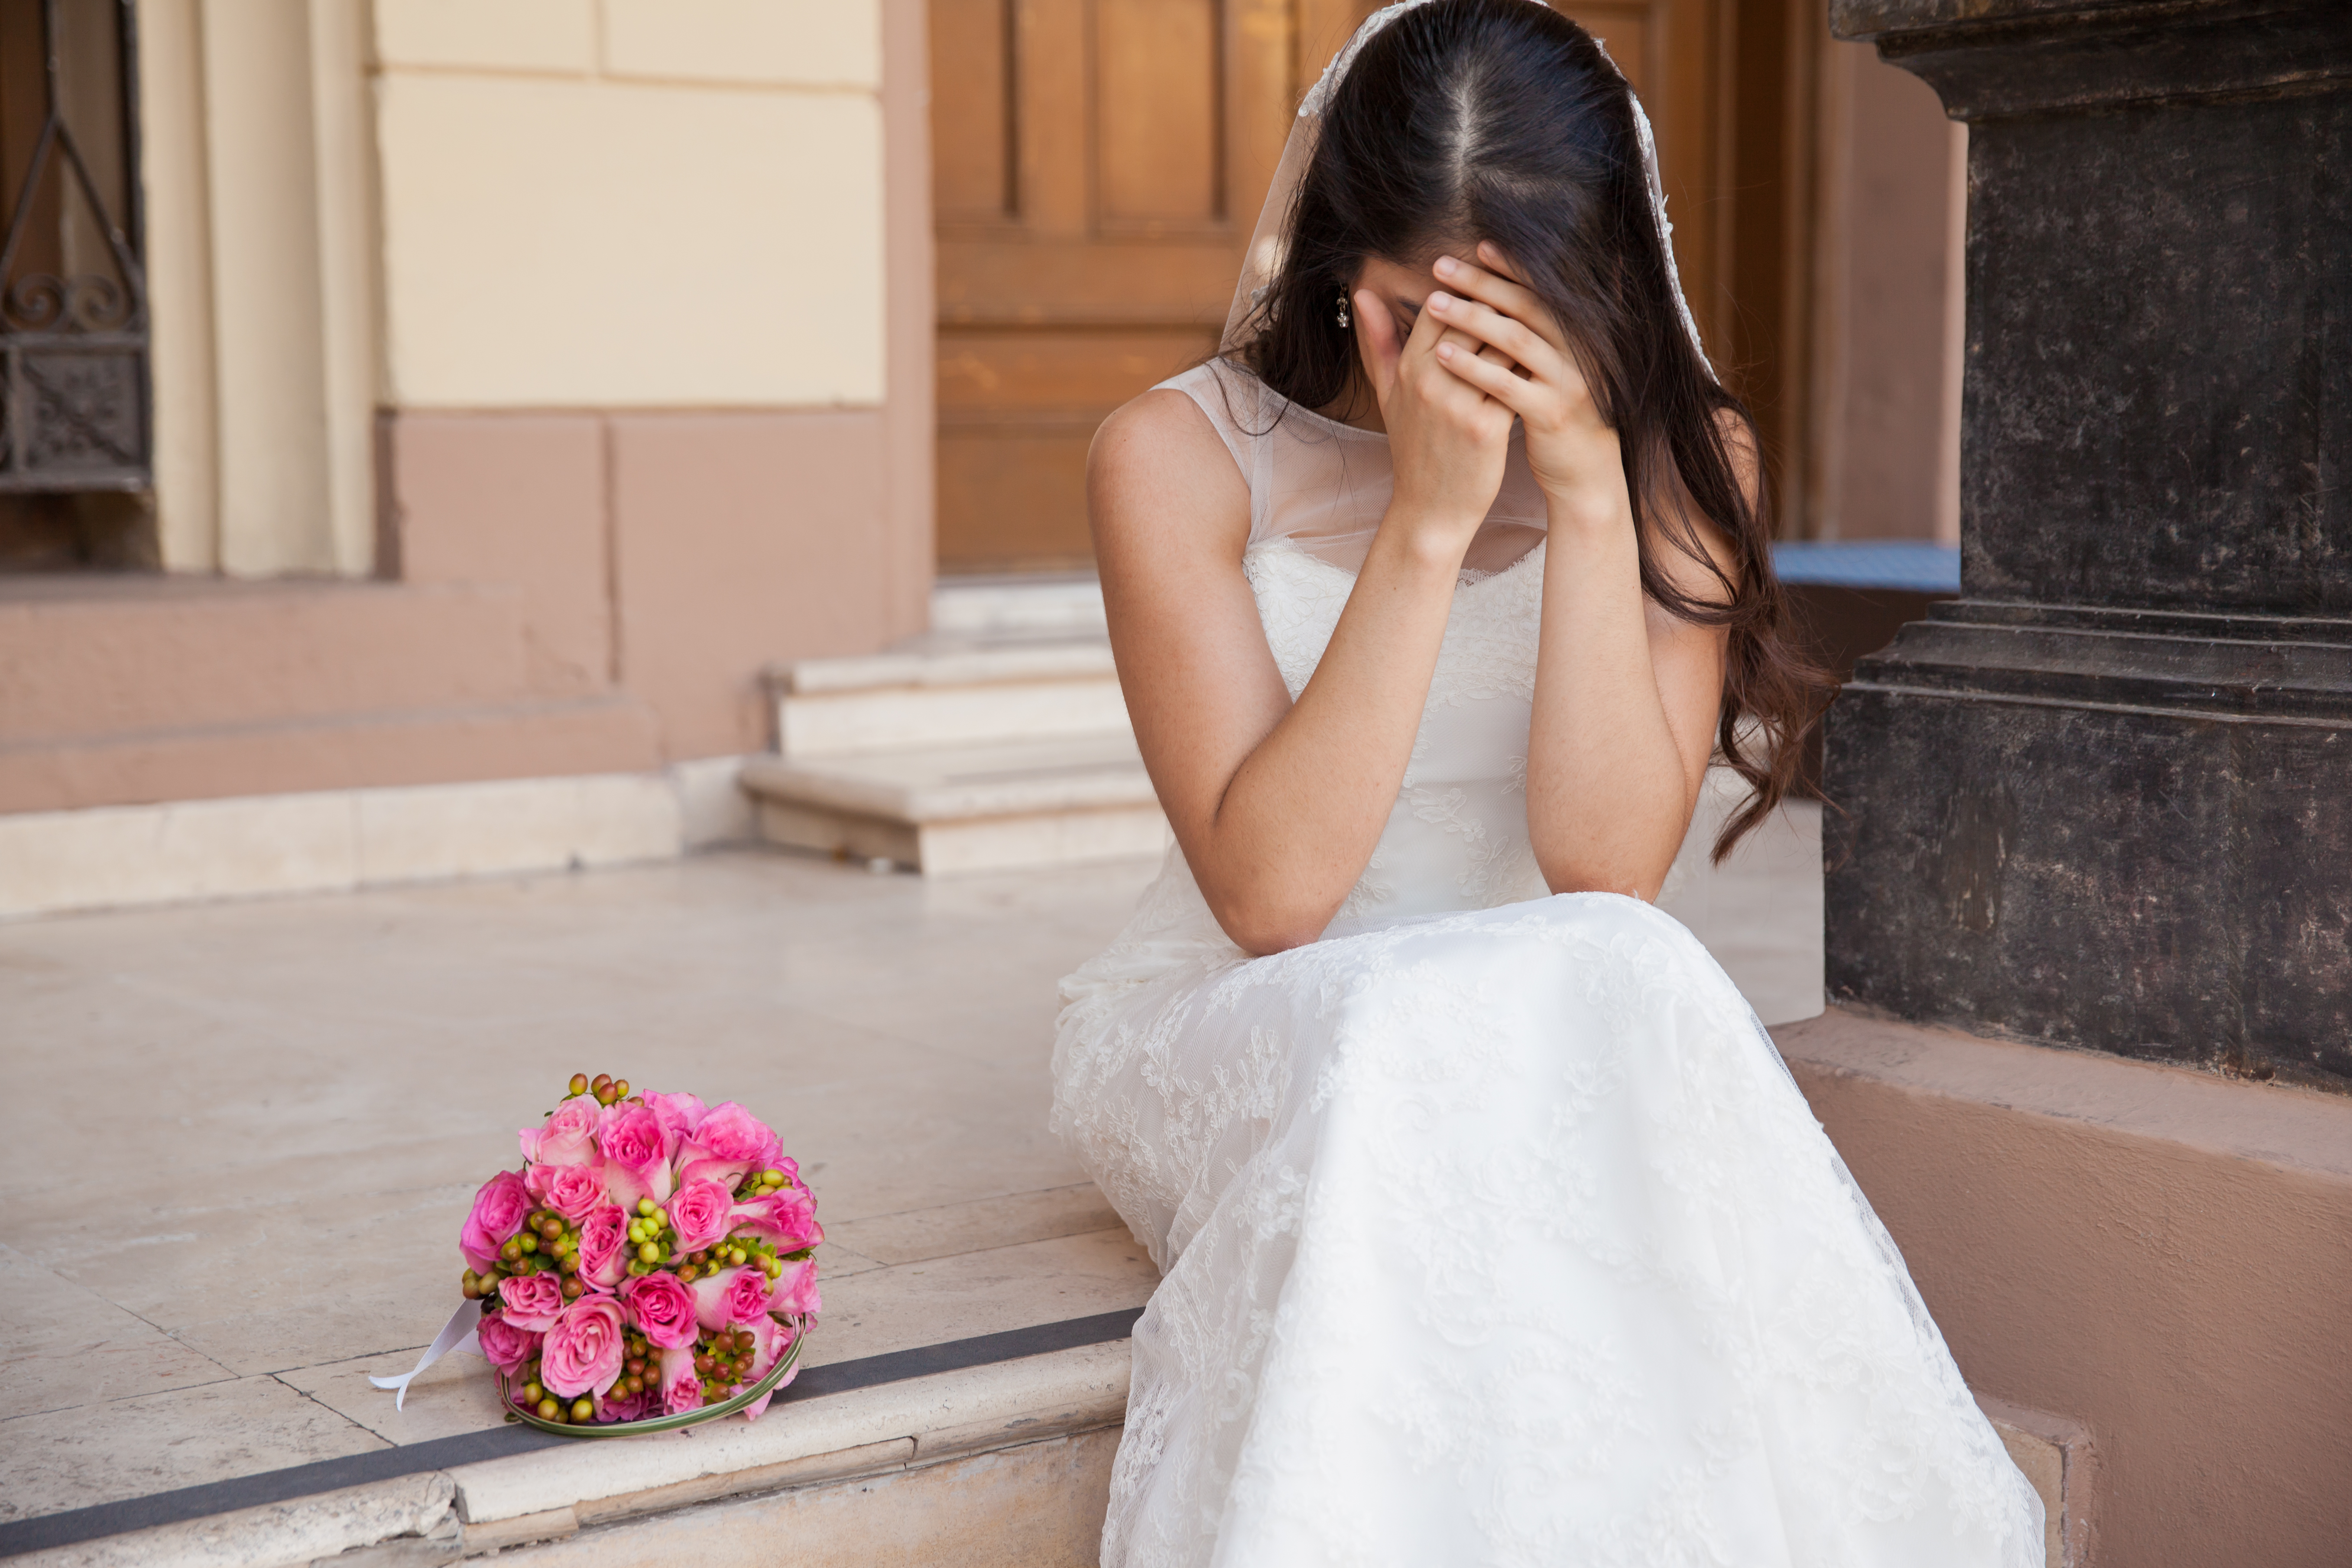 Eine verärgerte Braut | Quelle: Getty Images